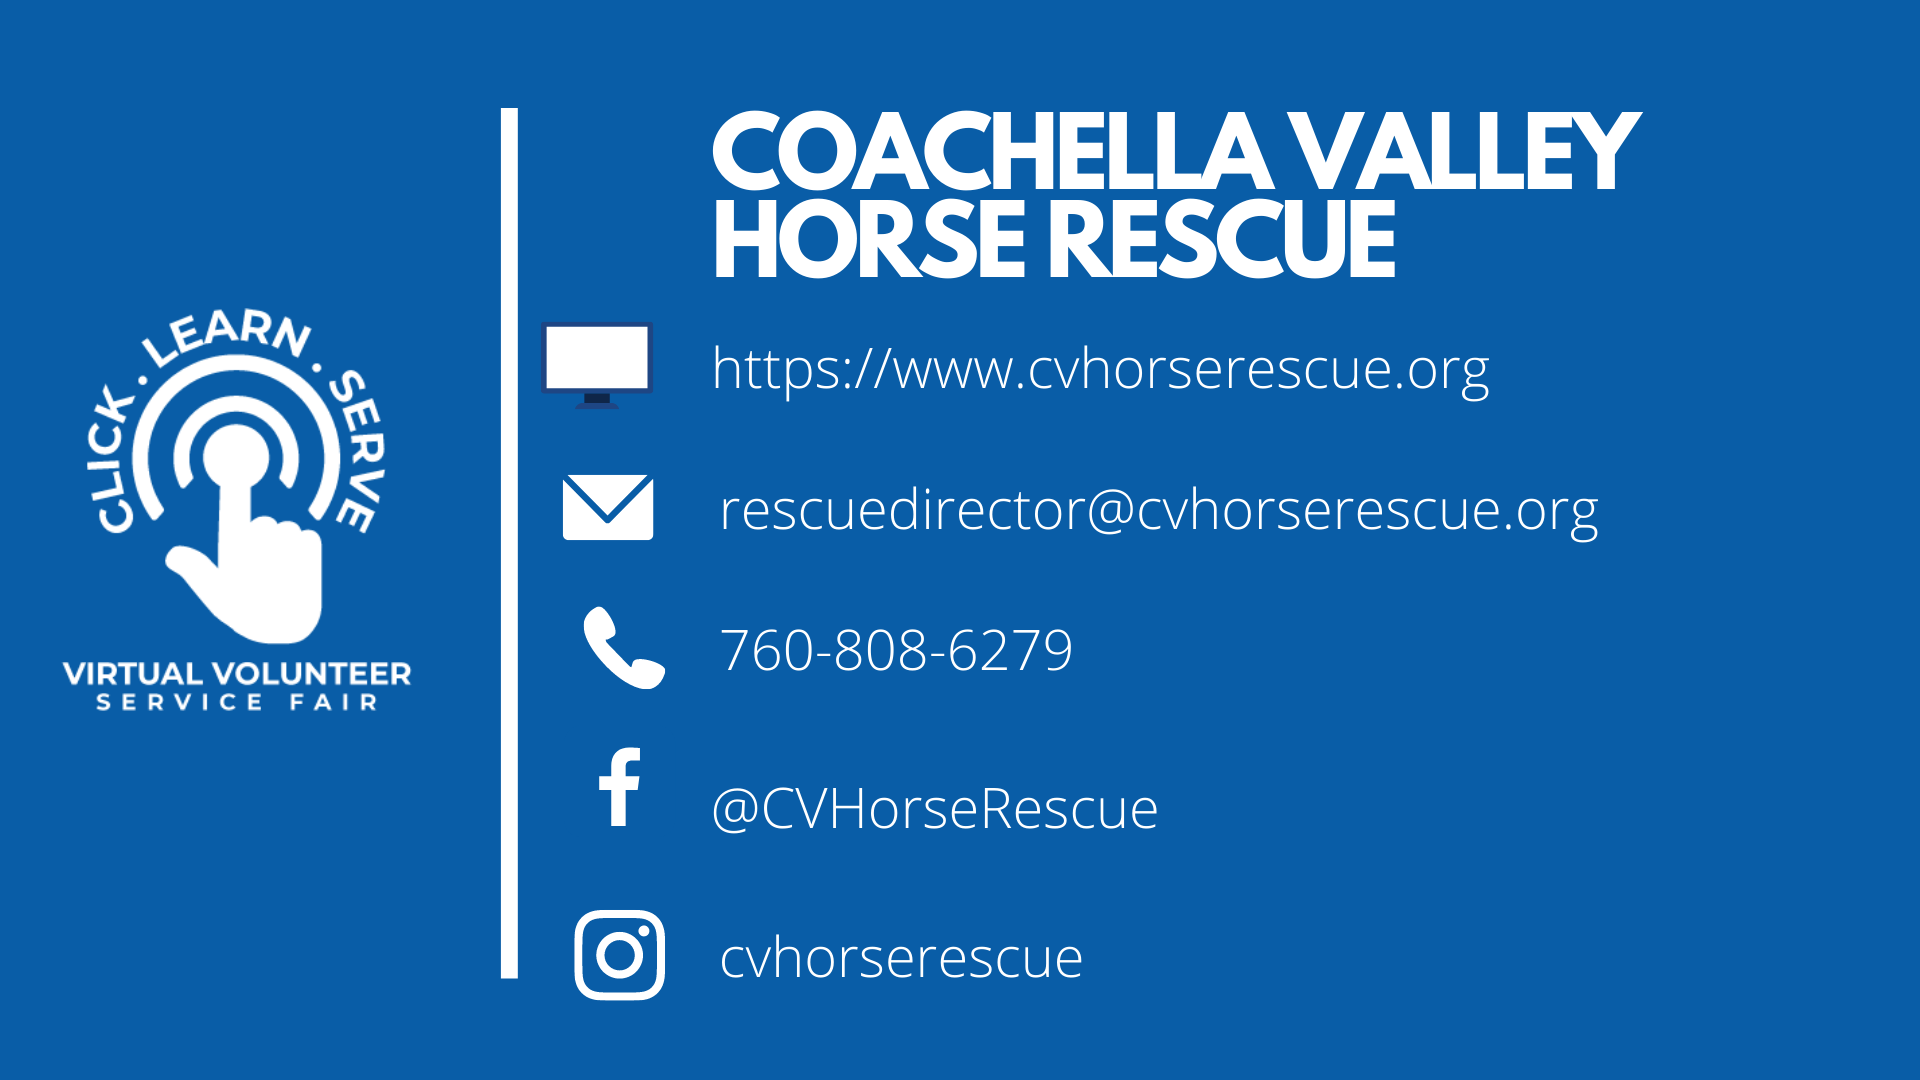 Coachella Valley Horse Rescue nonprofit video for Virtual Volunteer Service Fair